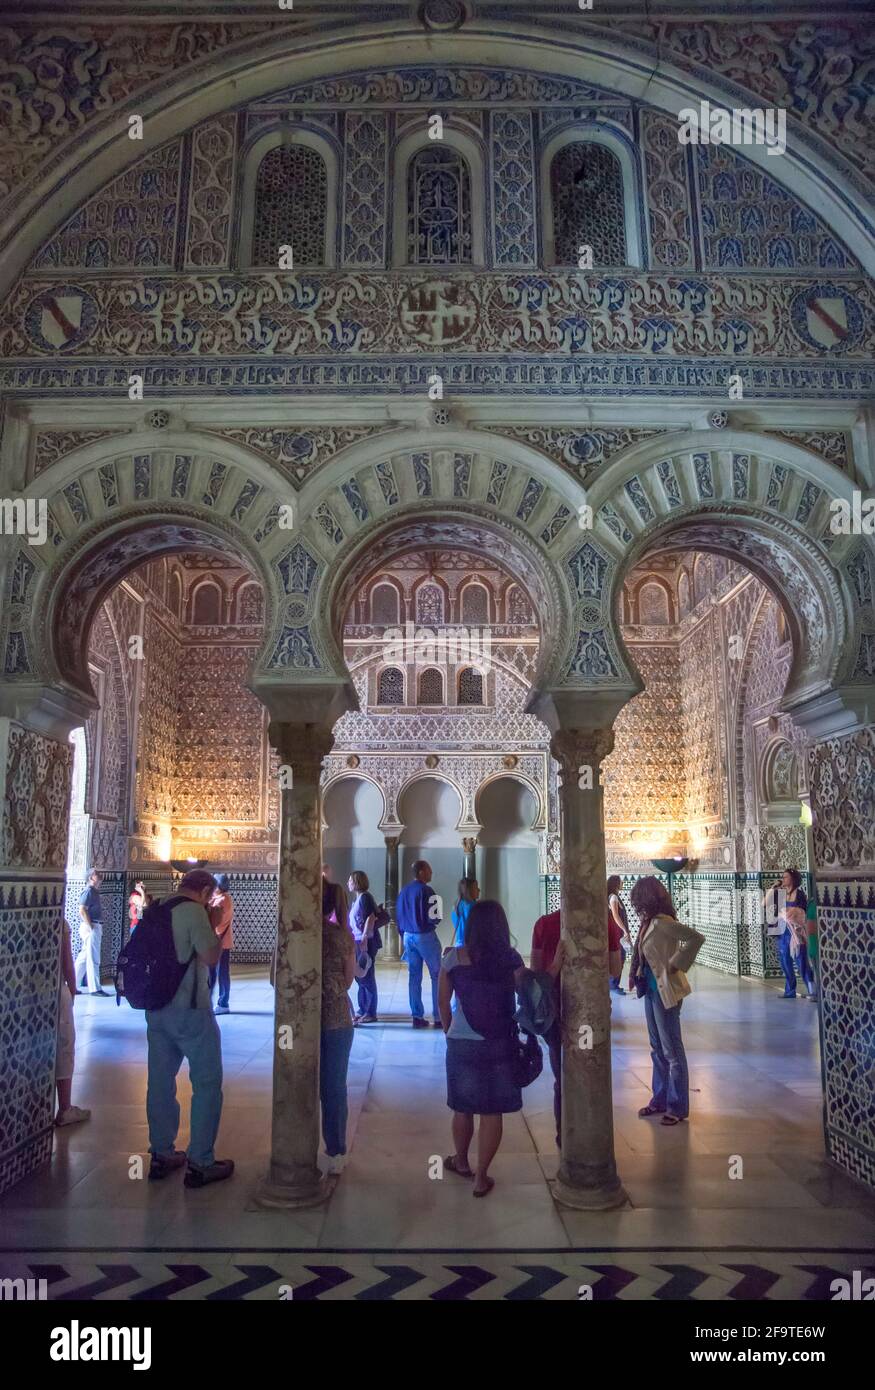 Archi islamici nel palazzo moresco all'interno dell'Alcazar reale di Siviglia, Siviglia, Spagna Foto Stock